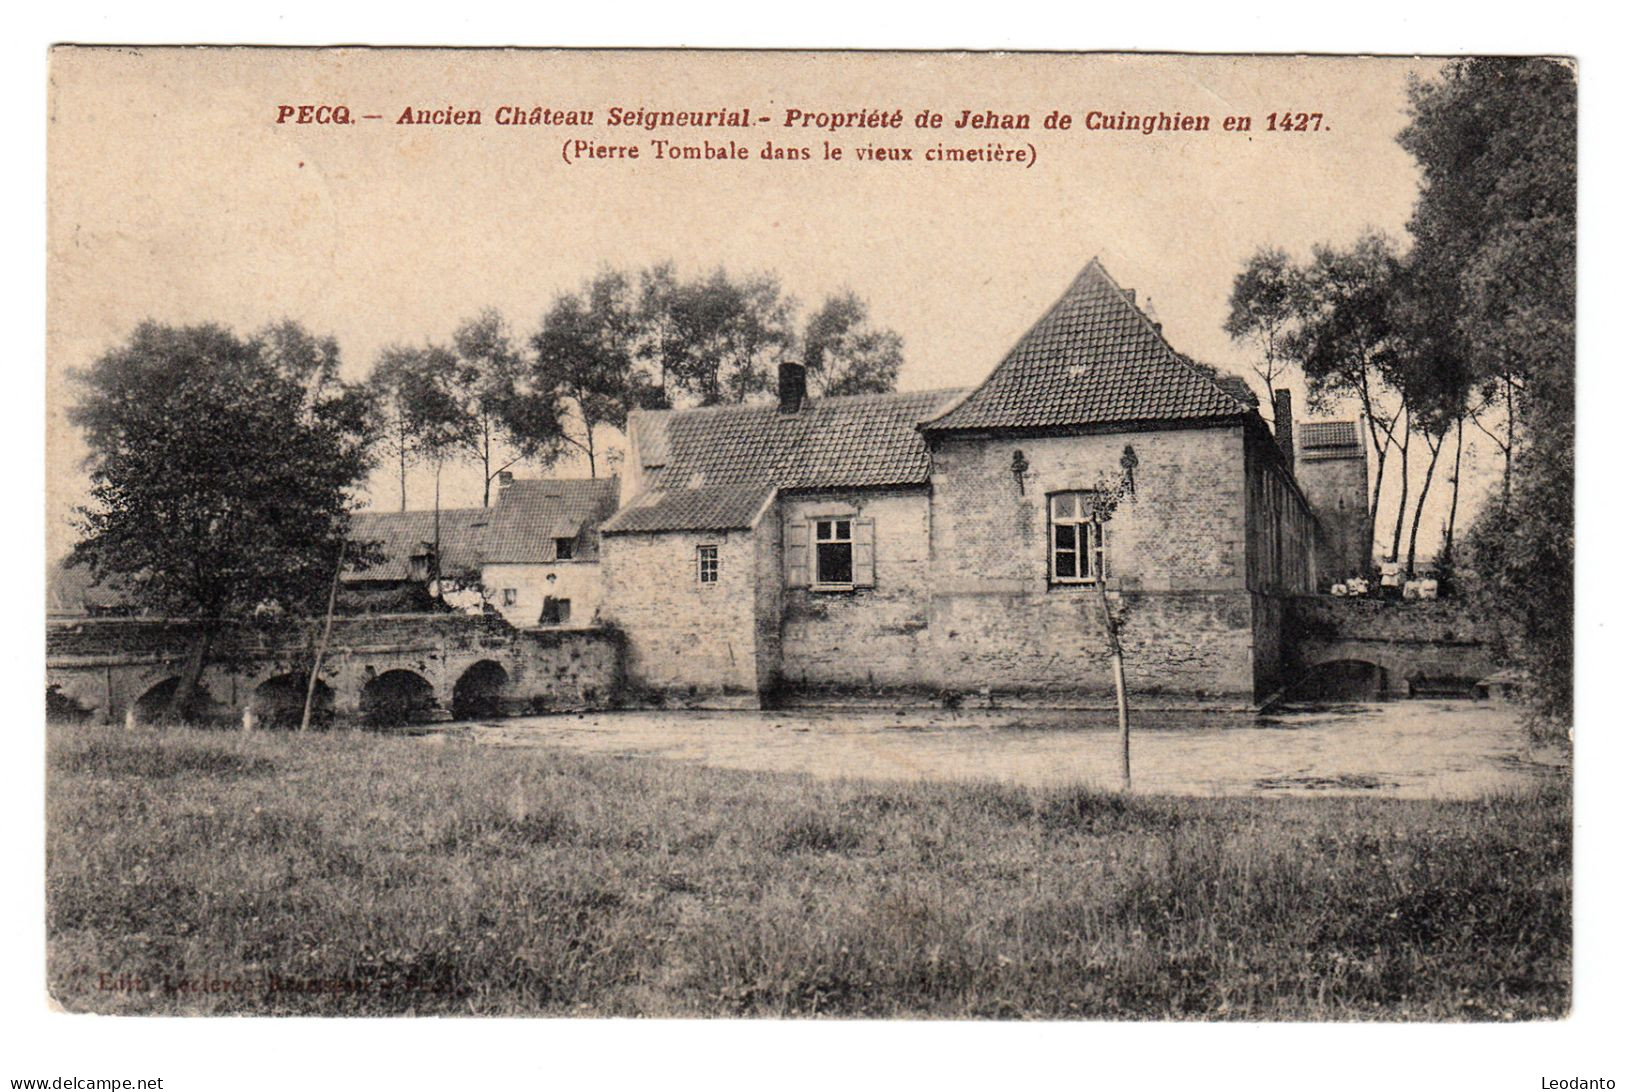 PECQ - Ancien Château Seigneurial - Pecq